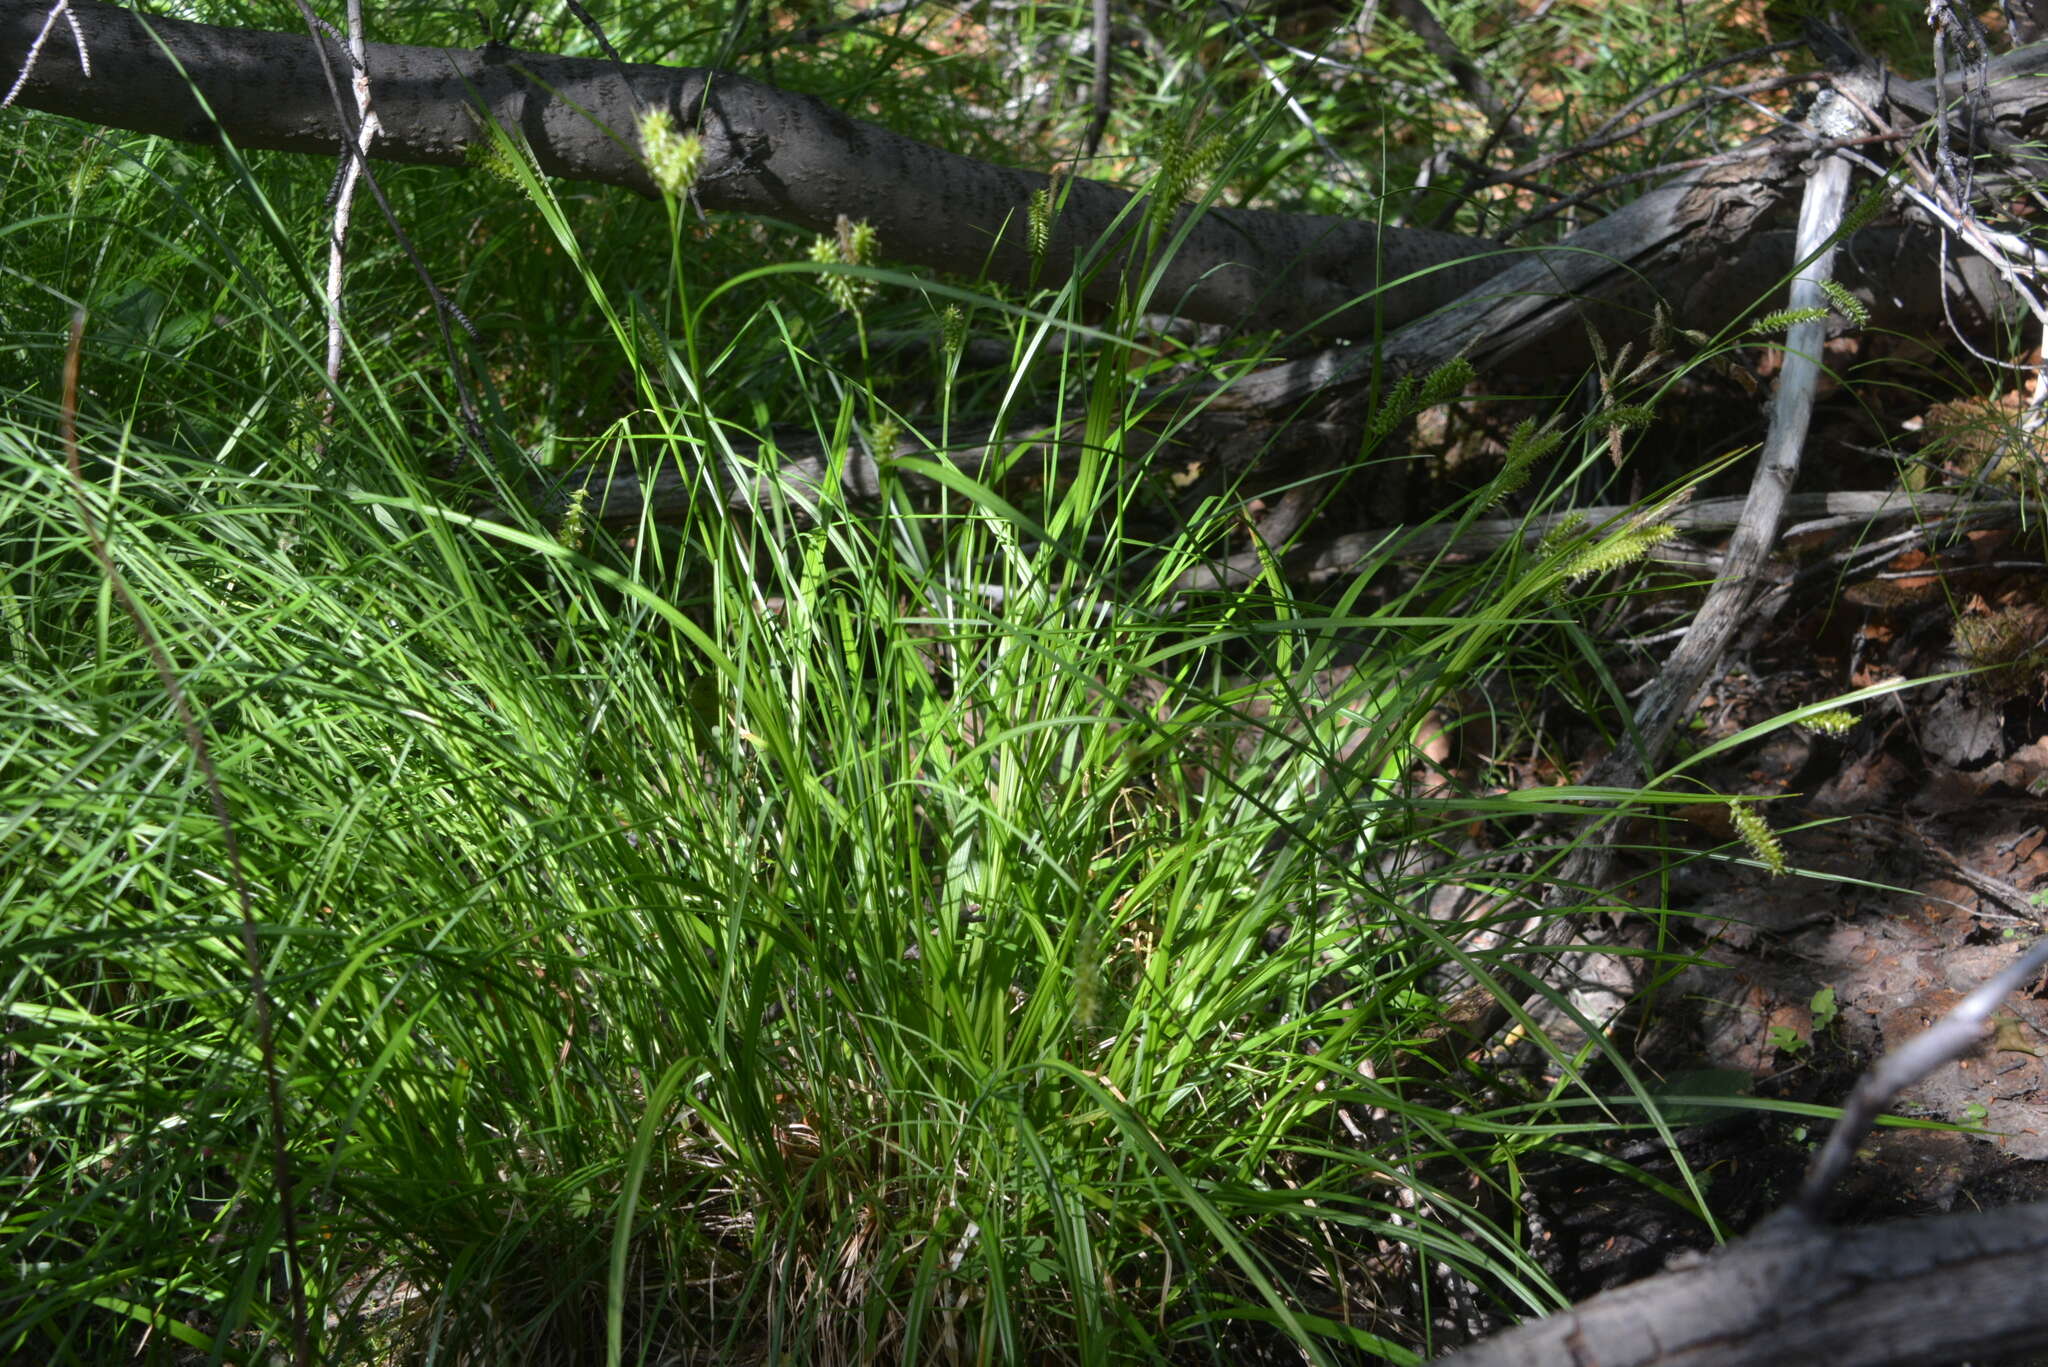 Image of Carex mollissima Christ ex Scheutz